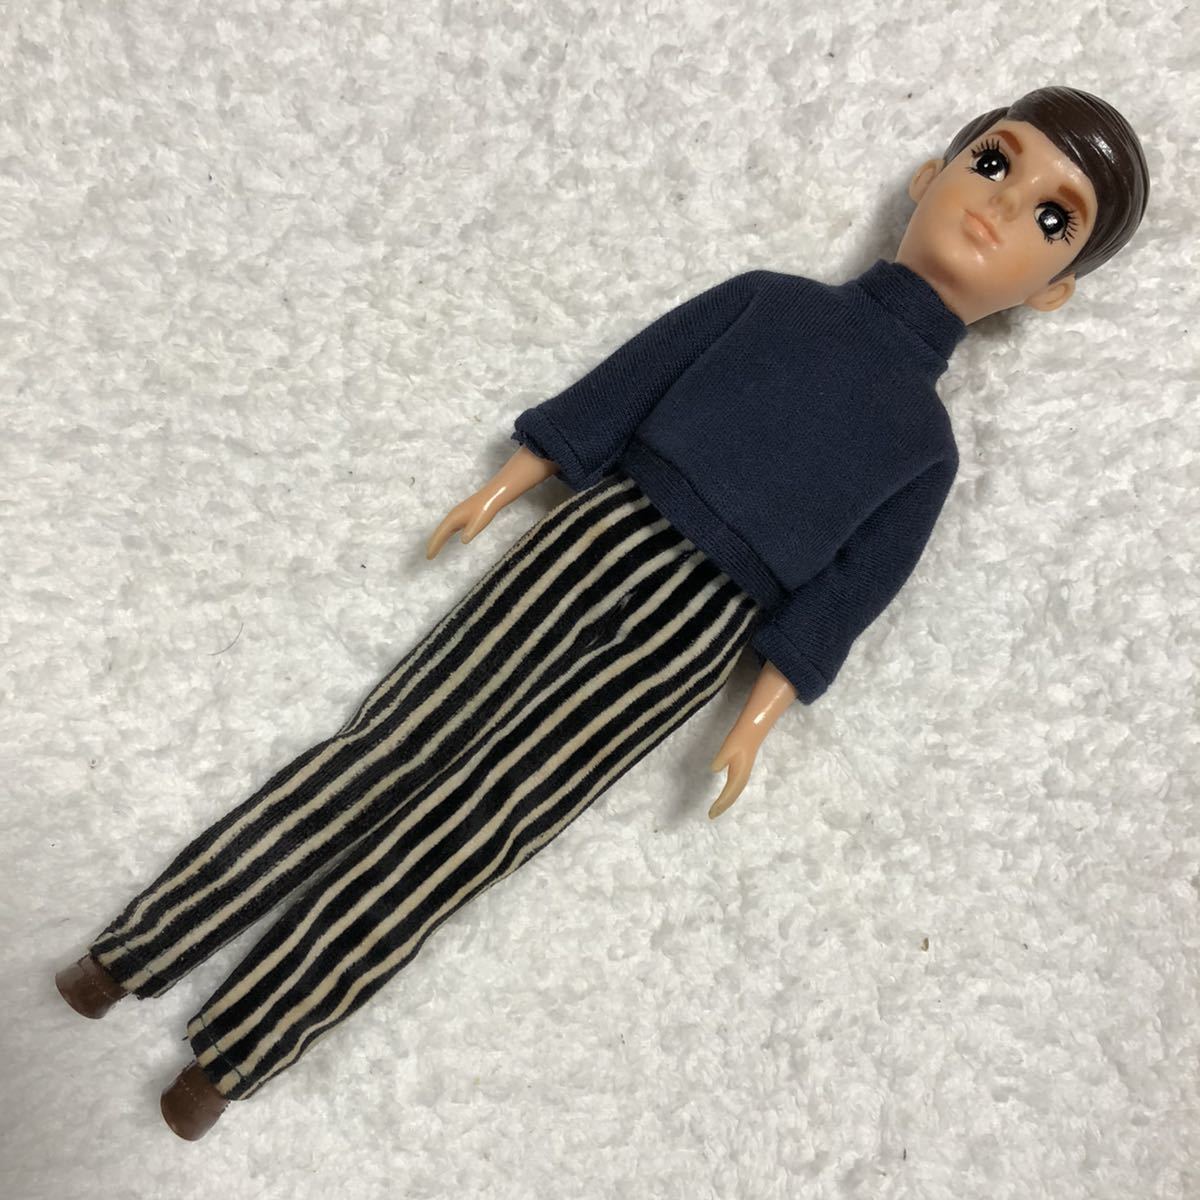 販売店一覧  初代わたるくん『初期』 初代リカちゃんのBF 1969年 当時物 おもちゃ/人形